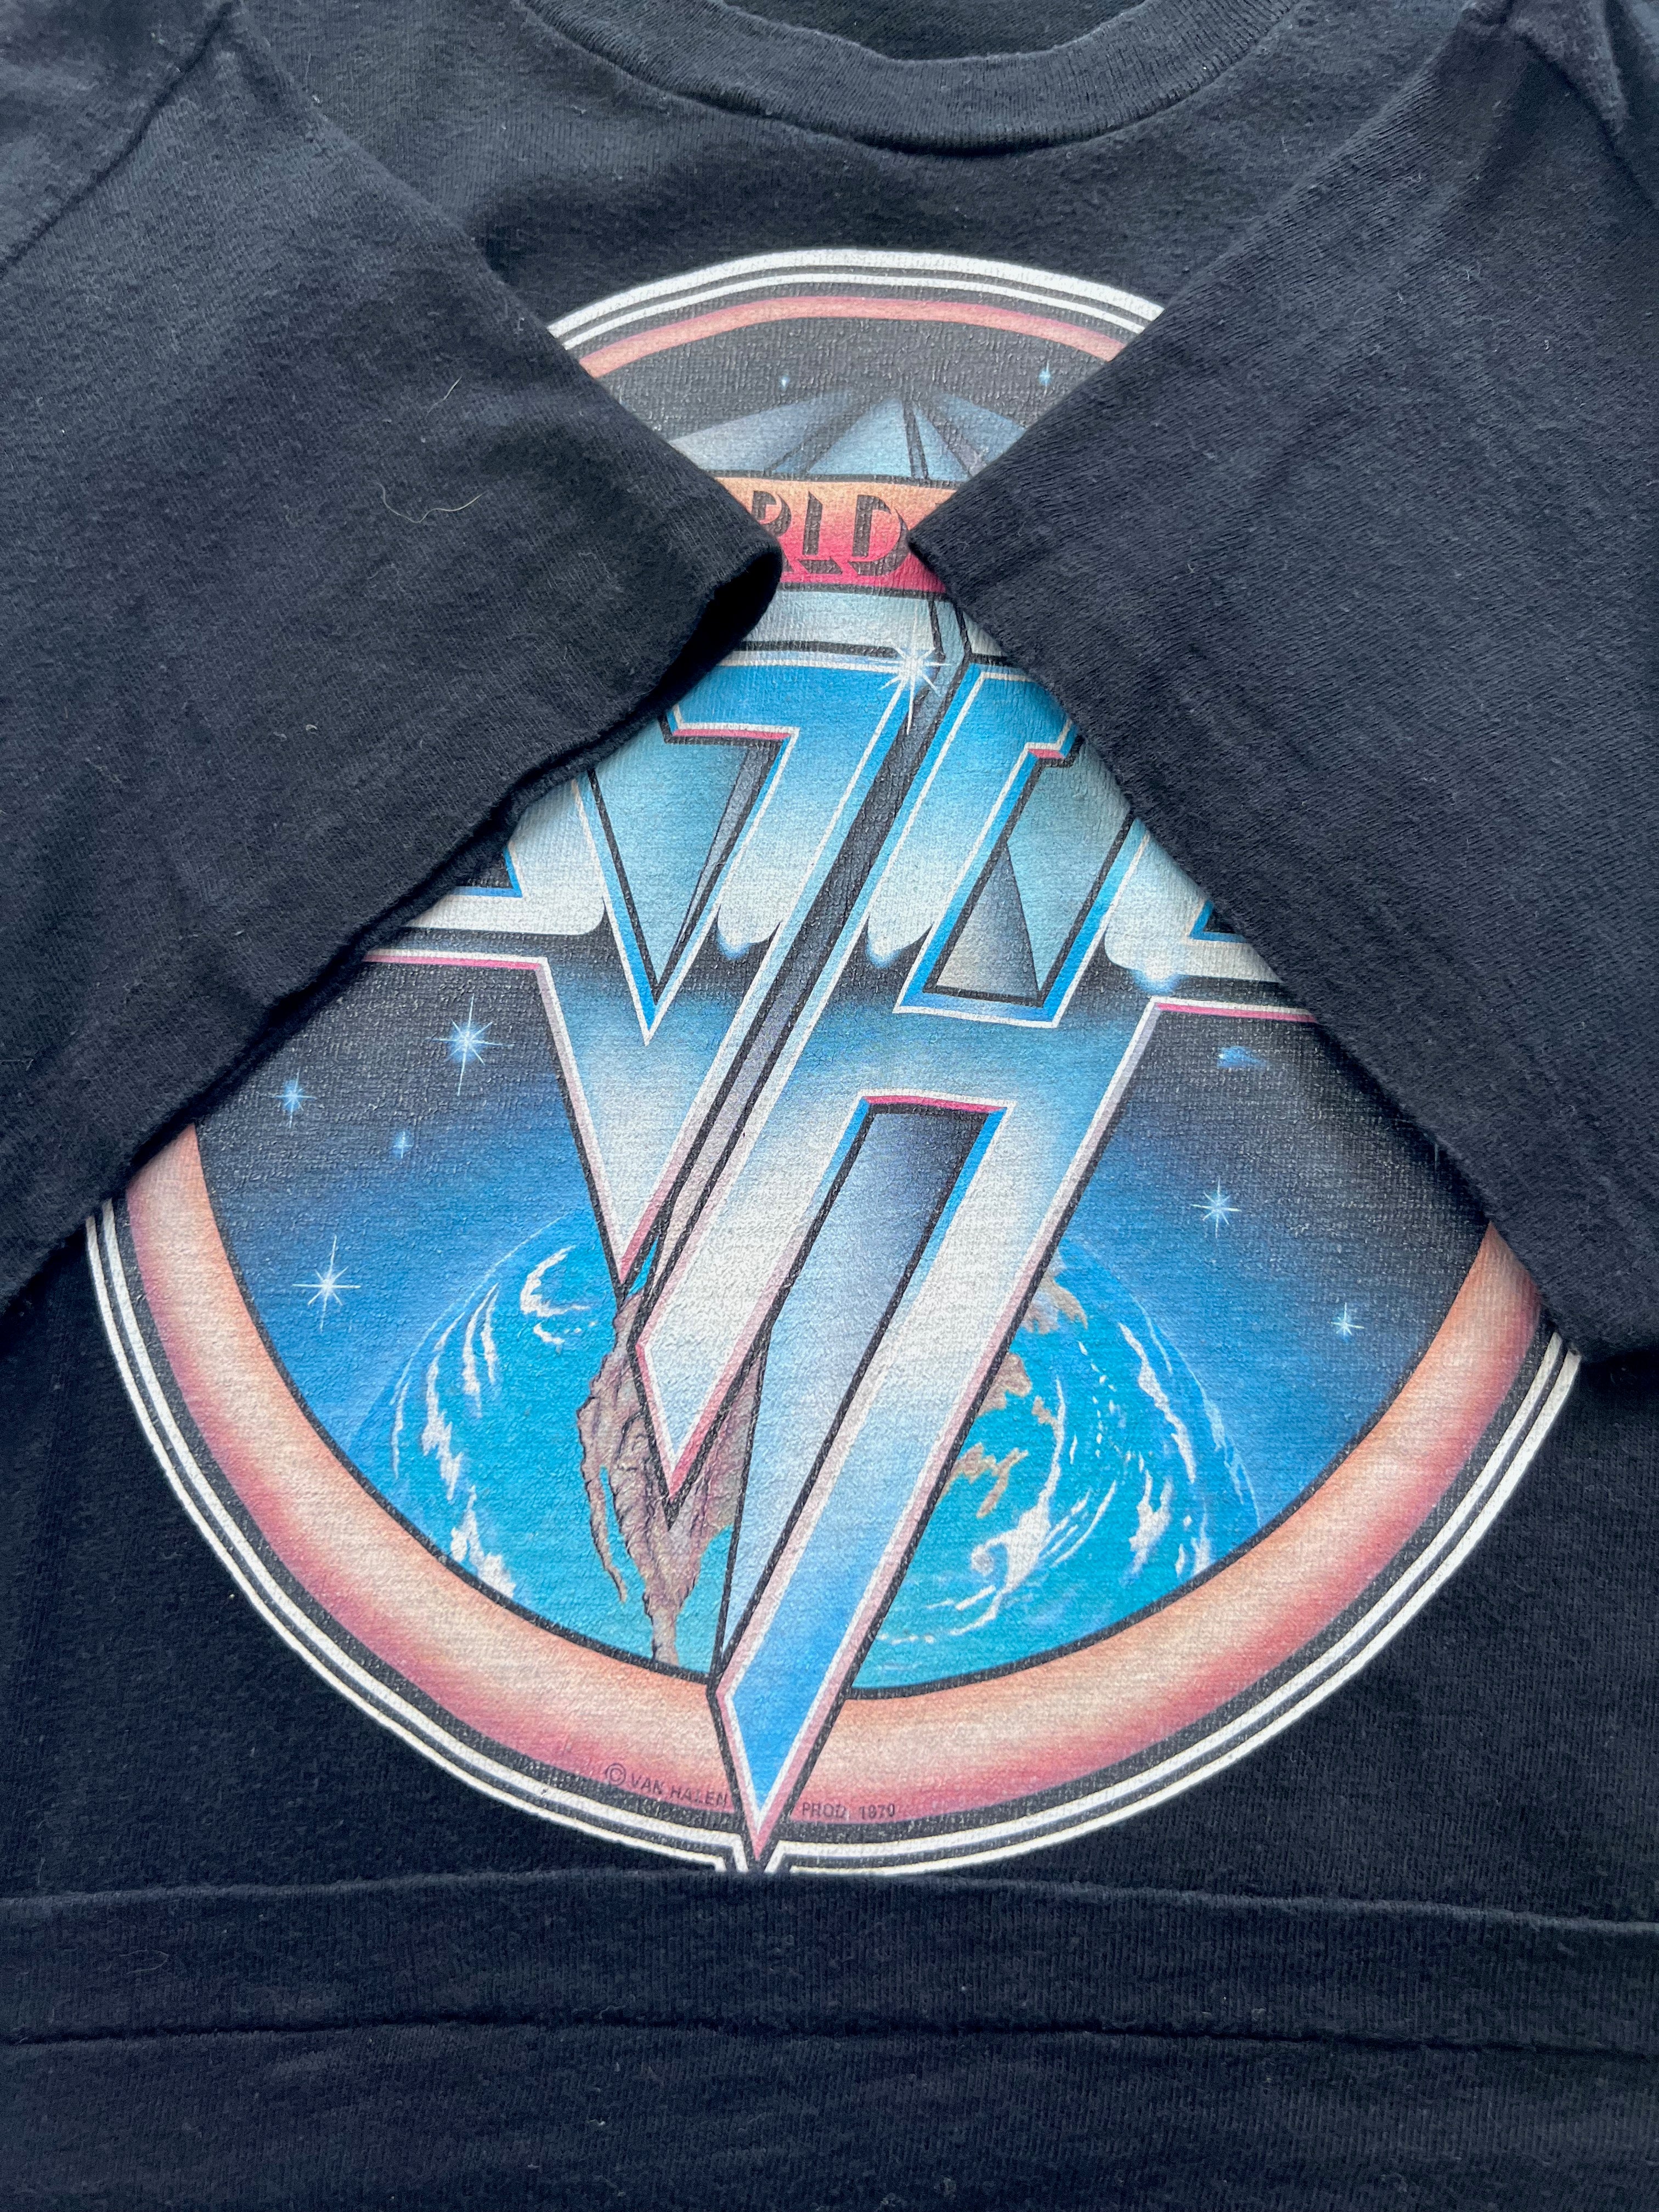 最新商品【US限定】VAN HALEN ワールドツアー 1979ヴィンテージ風Tシャツ トップス